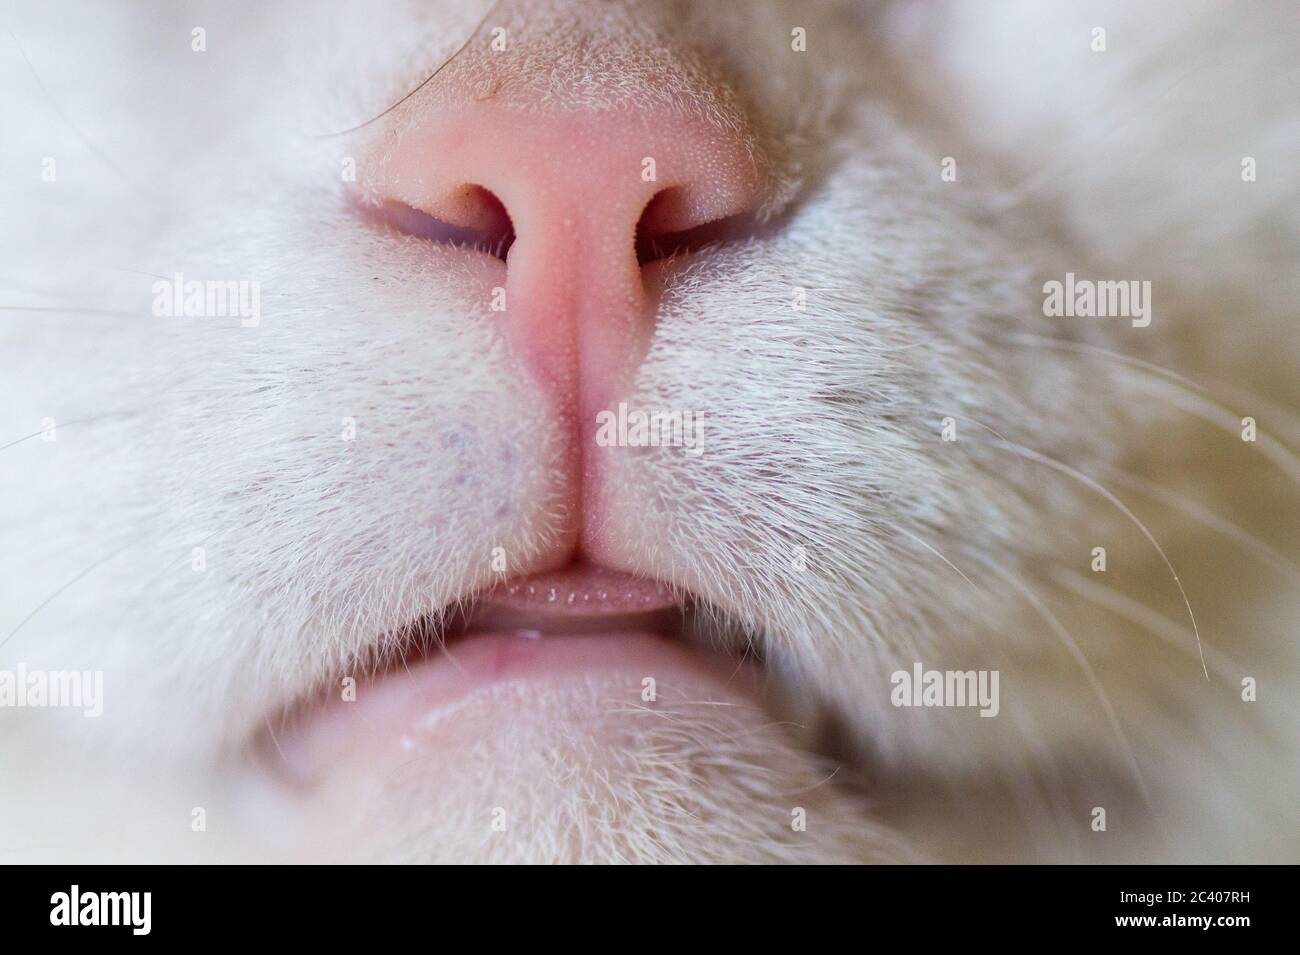 Кошка нос и рот. Кошачий нос крупно. Фон нежные носики кота. Кот с розовым носом.